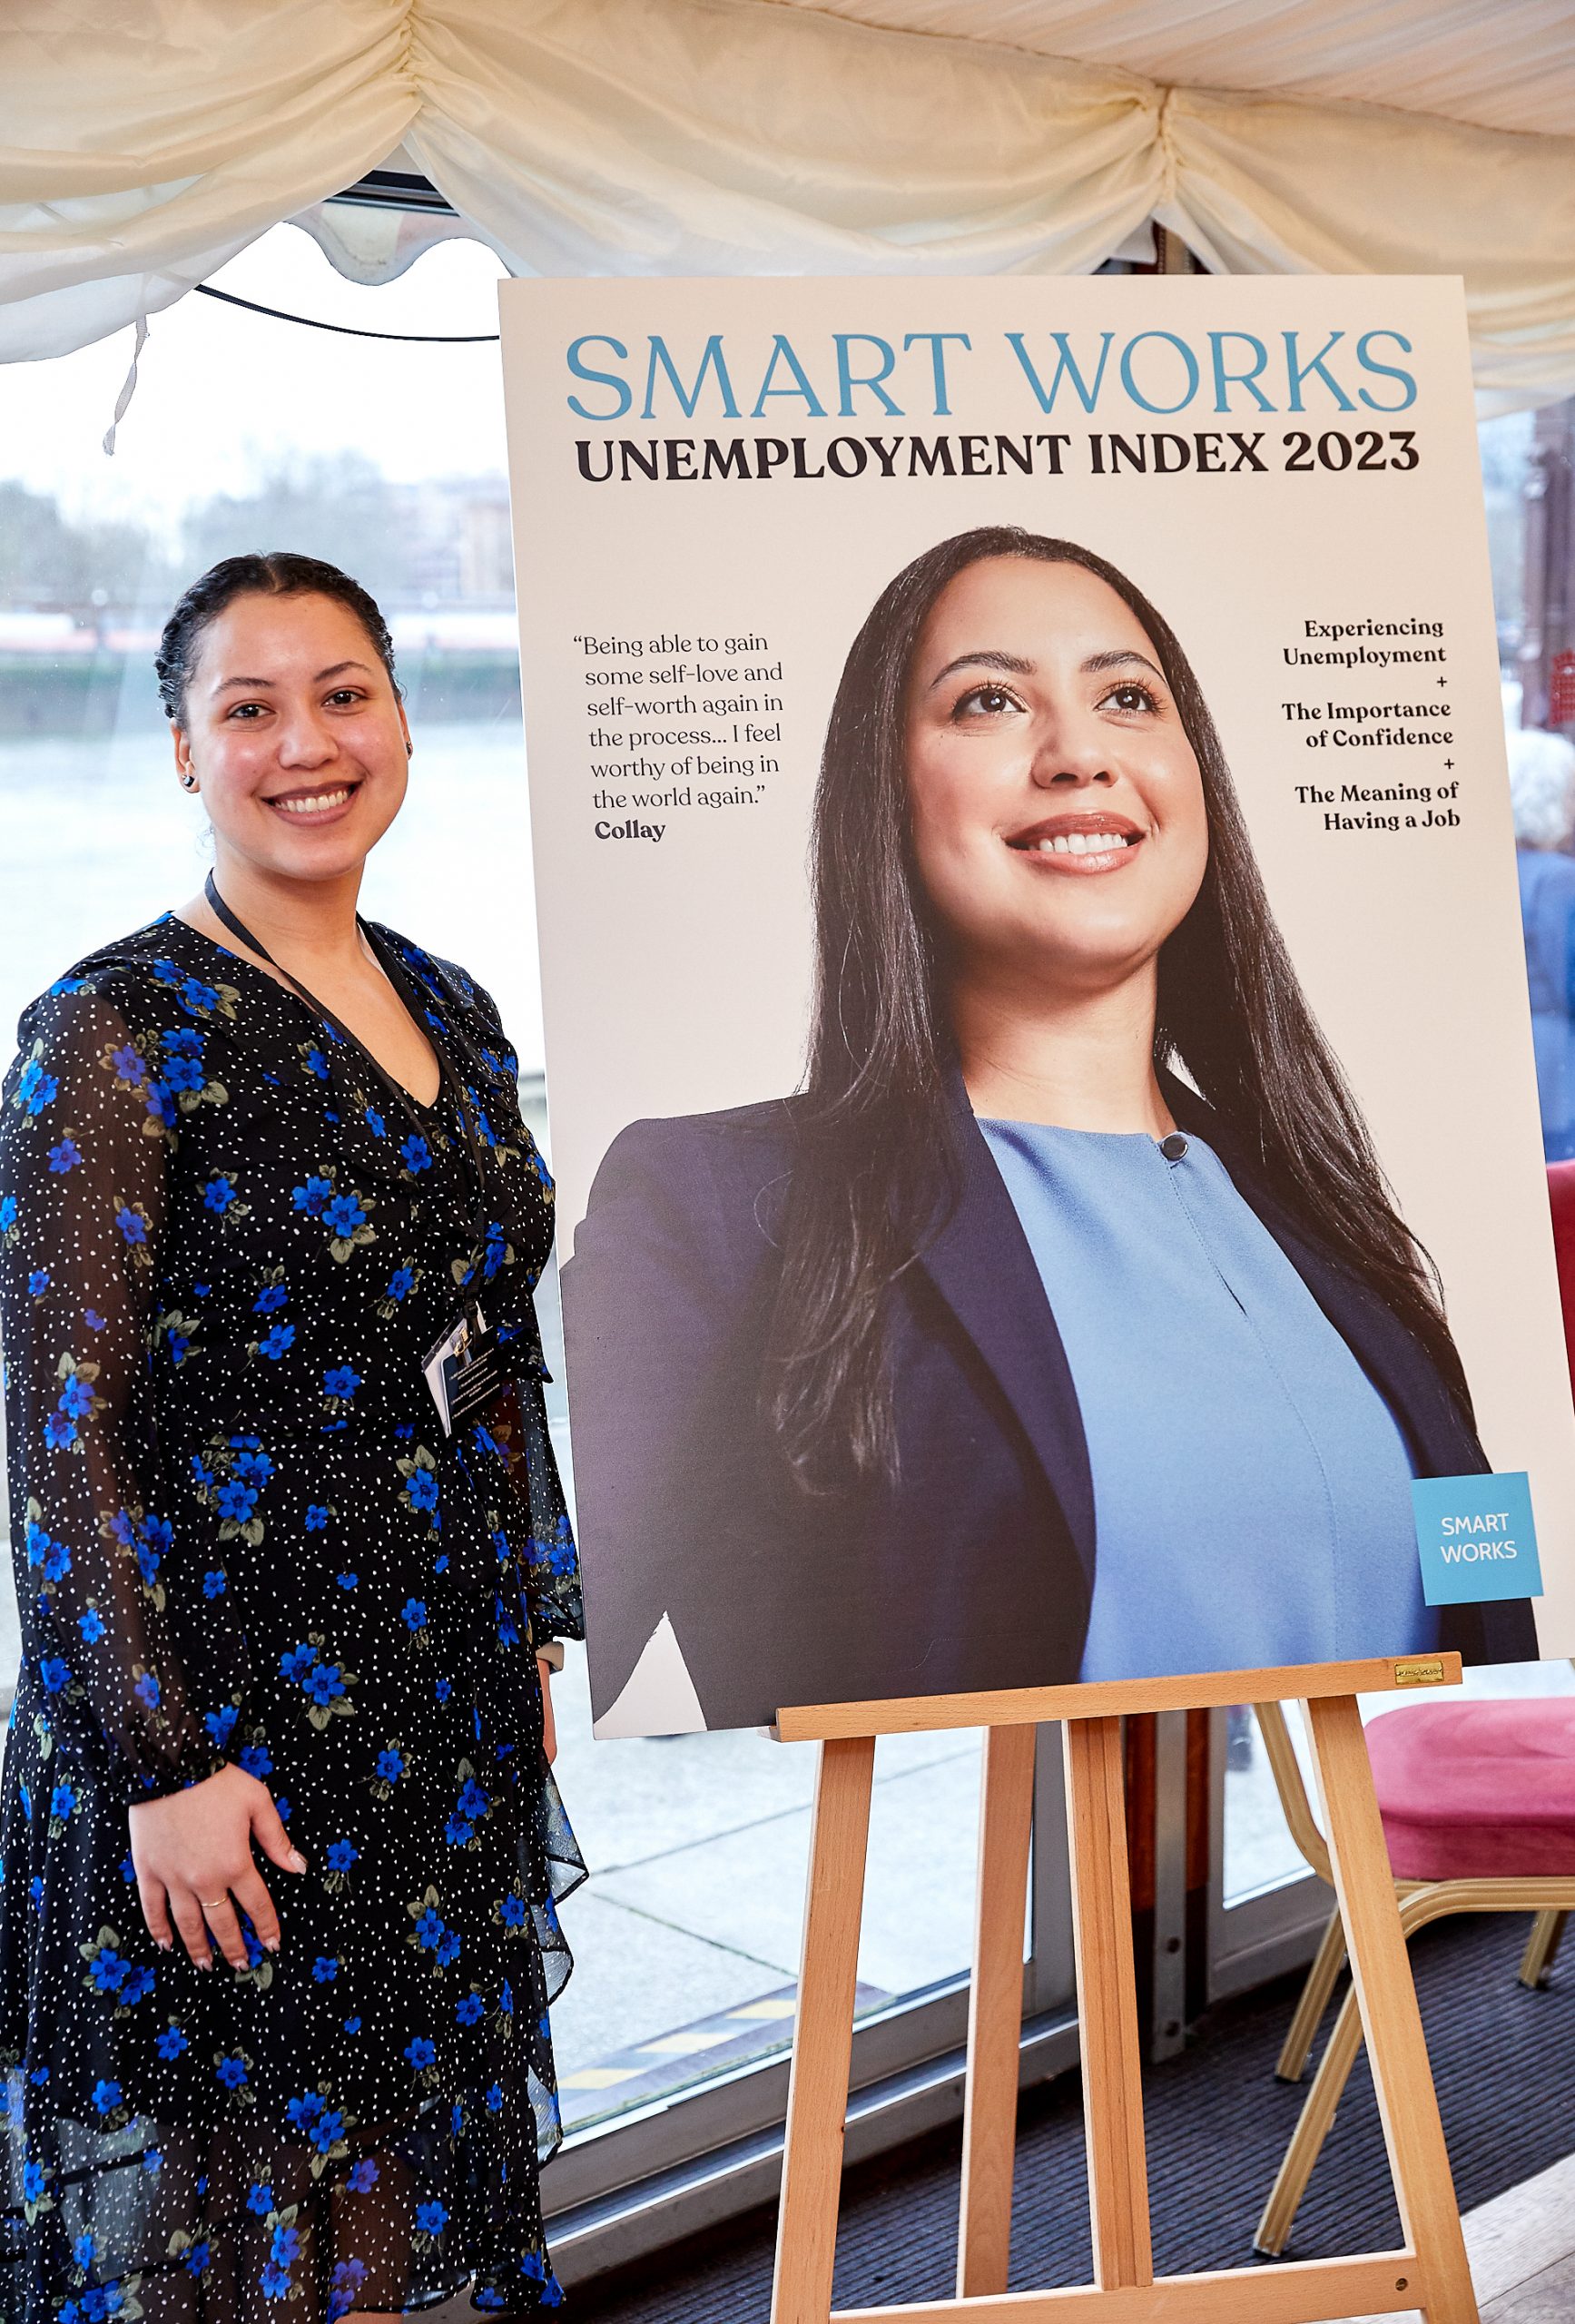 Smart Works Unemployment Index 2023 image